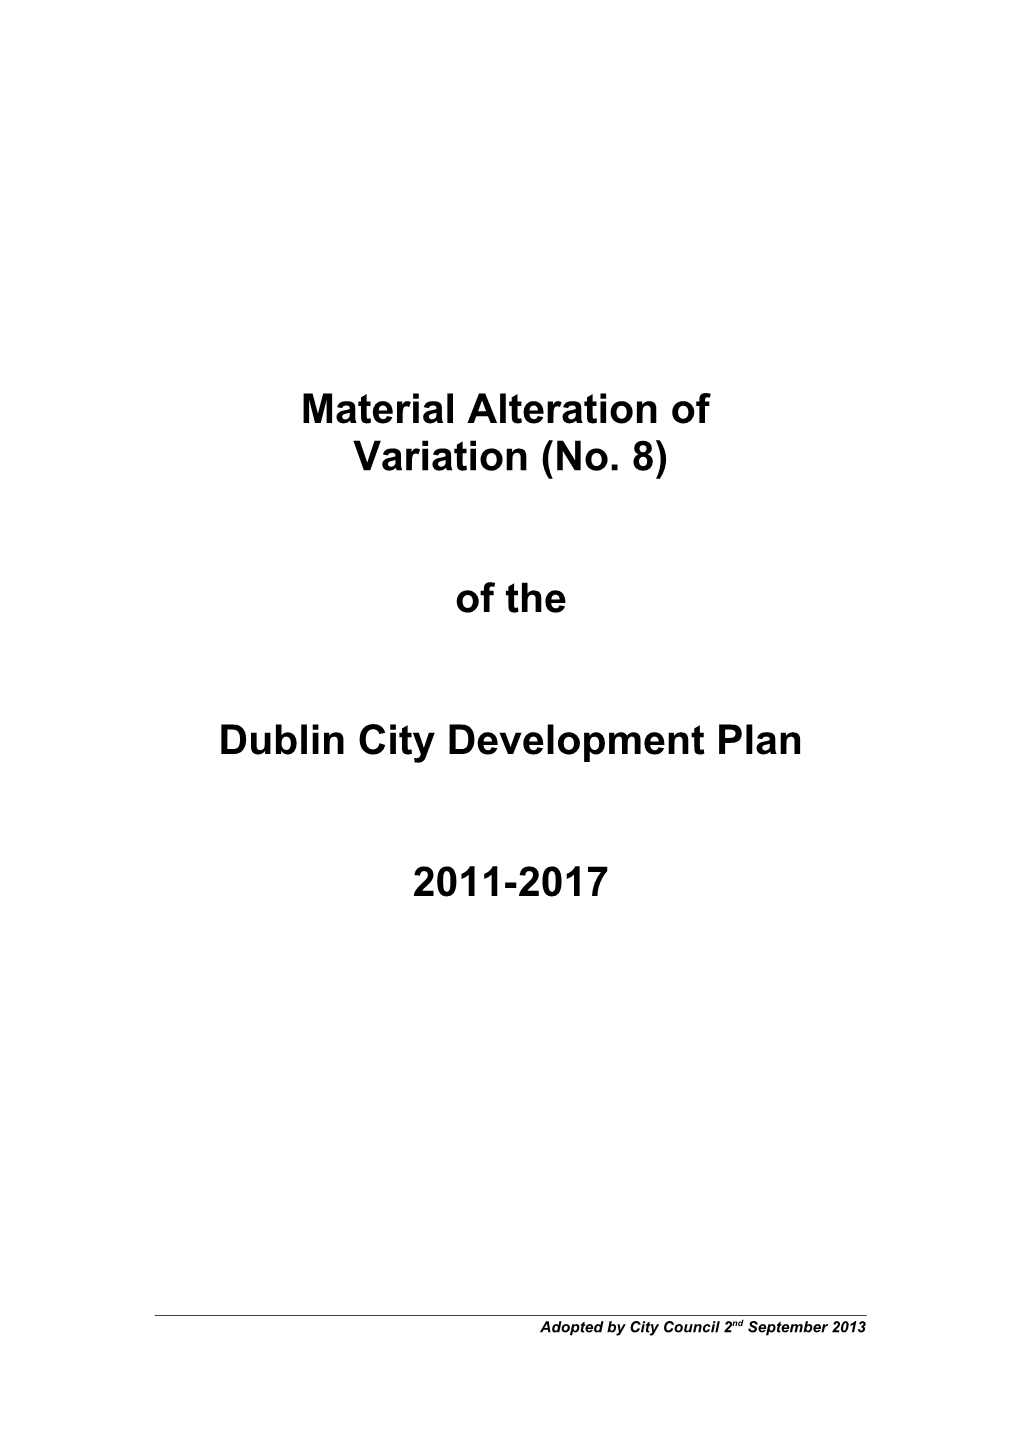 Dublin City Development Plan